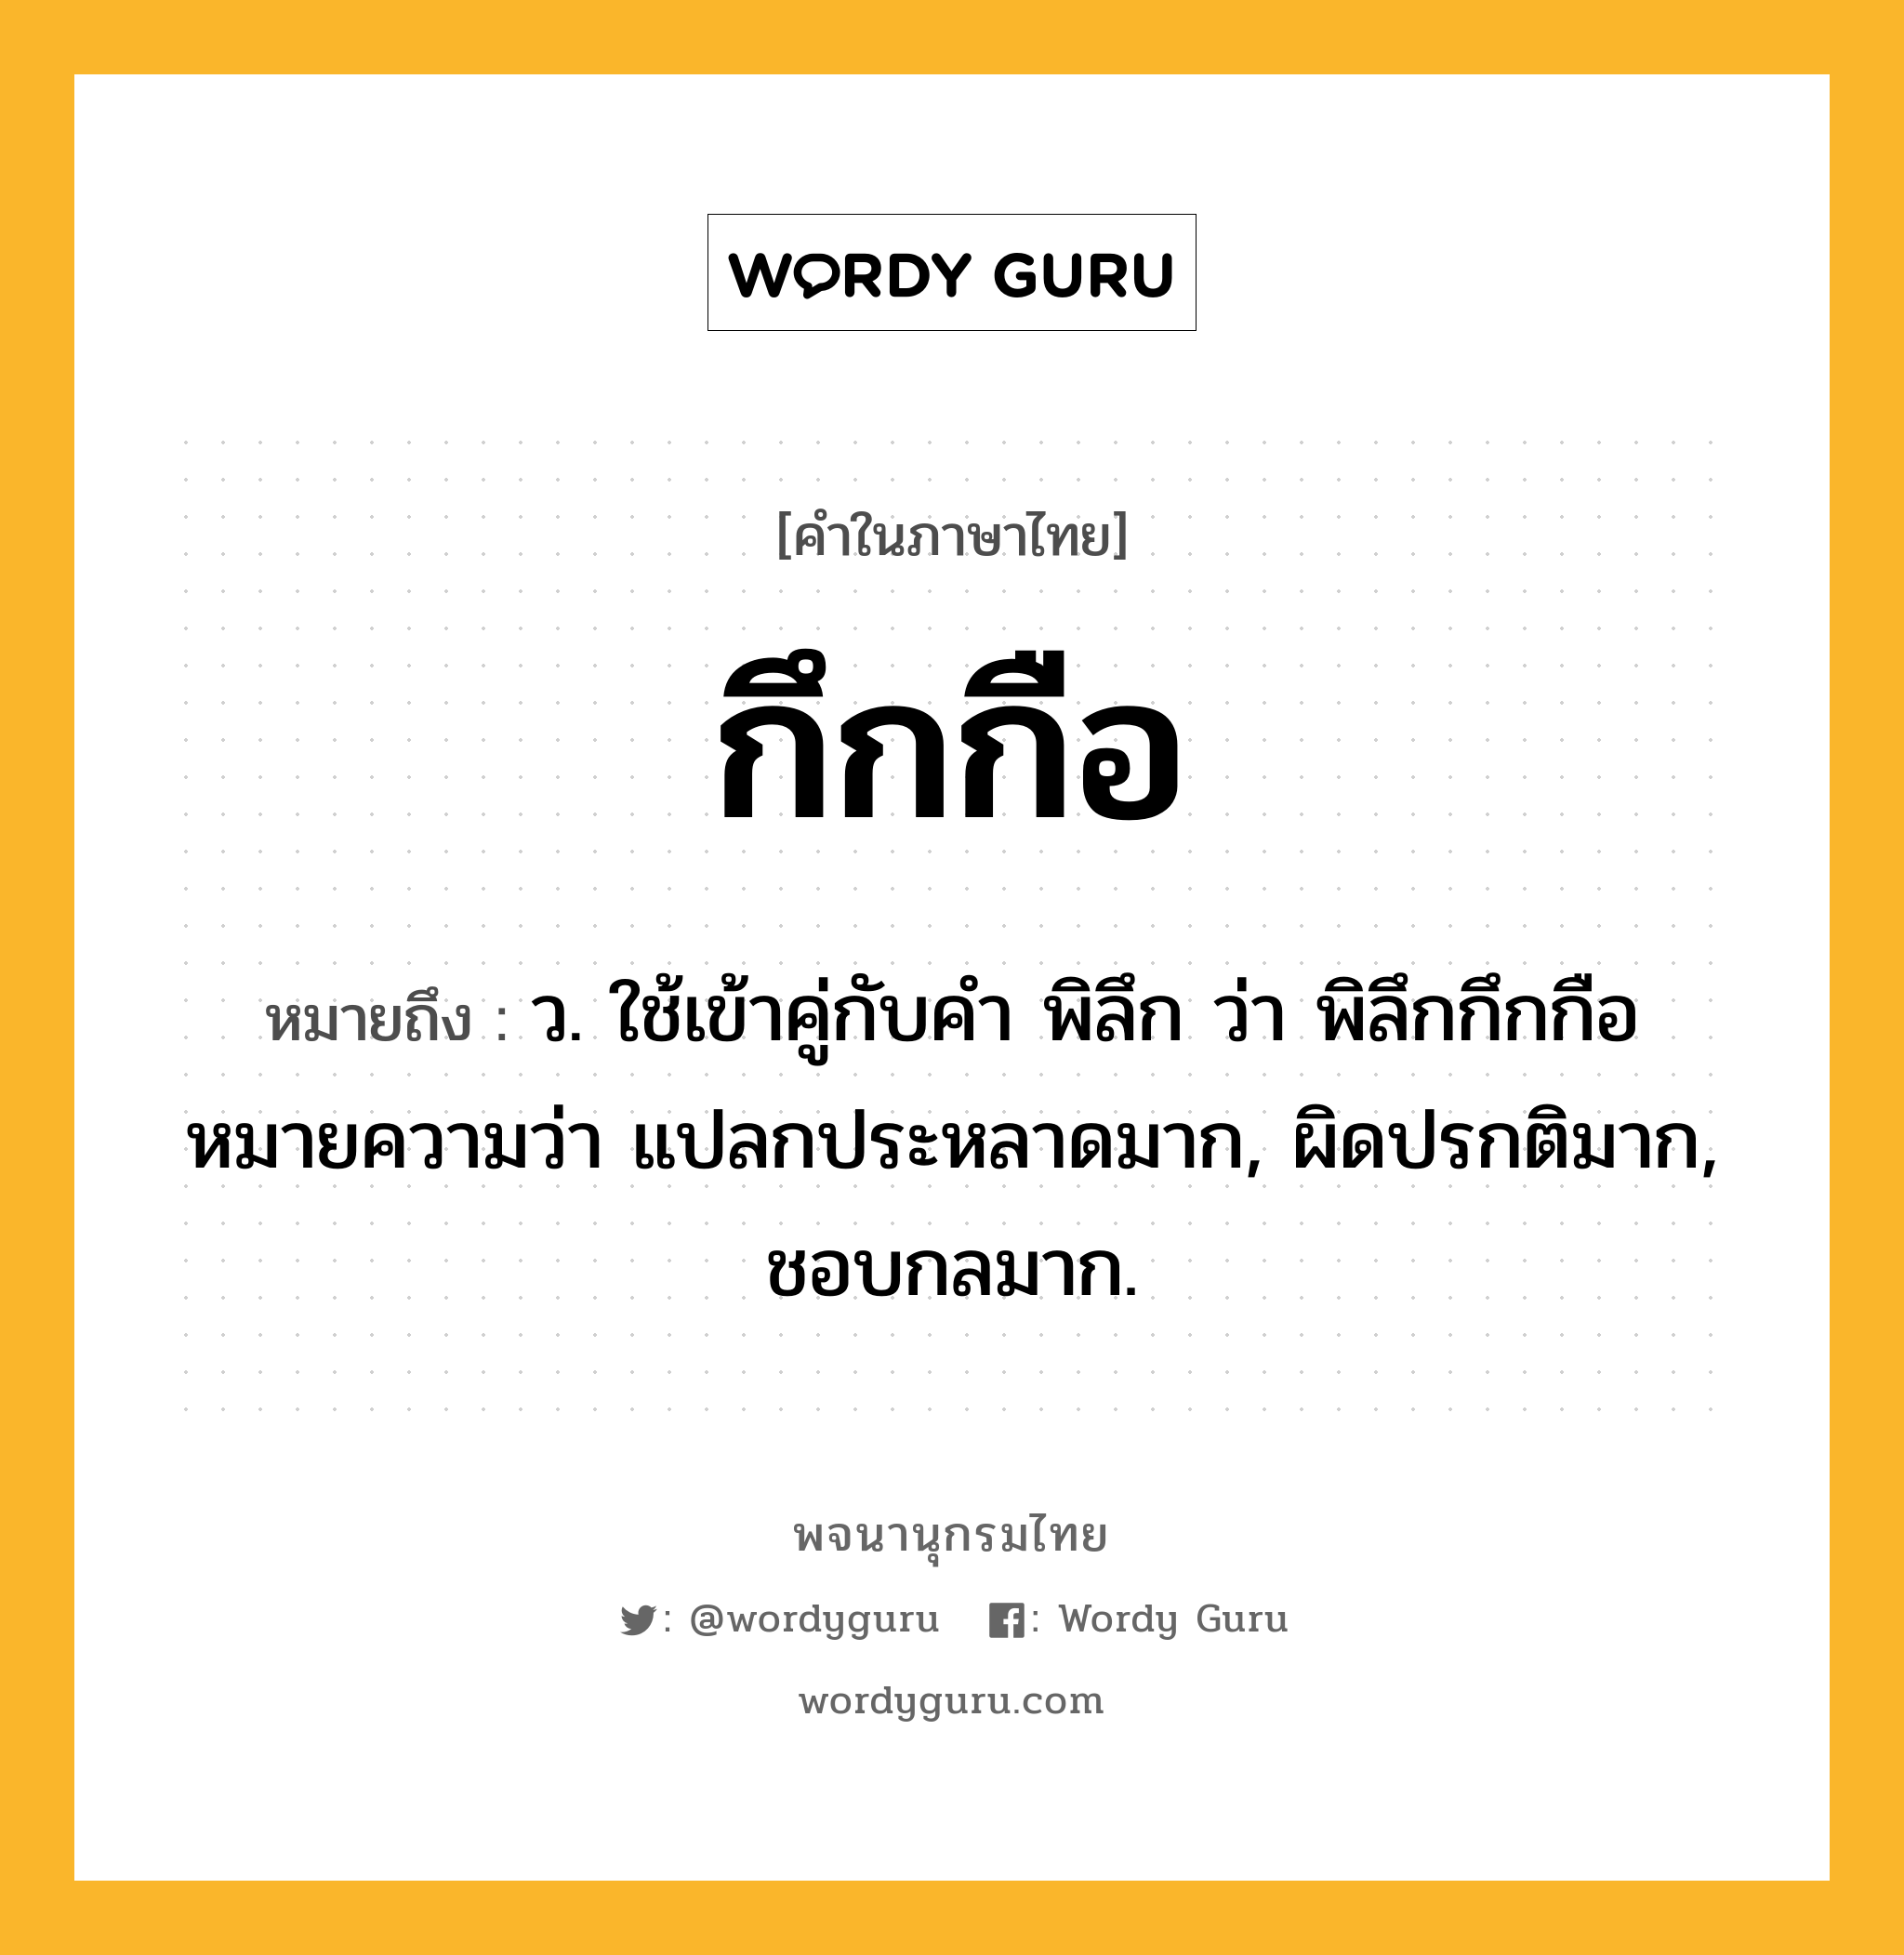 กึกกือ หมายถึงอะไร?, คำในภาษาไทย กึกกือ หมายถึง ว. ใช้เข้าคู่กับคํา พิลึก ว่า พิลึกกึกกือ หมายความว่า แปลกประหลาดมาก, ผิดปรกติมาก, ชอบกลมาก.